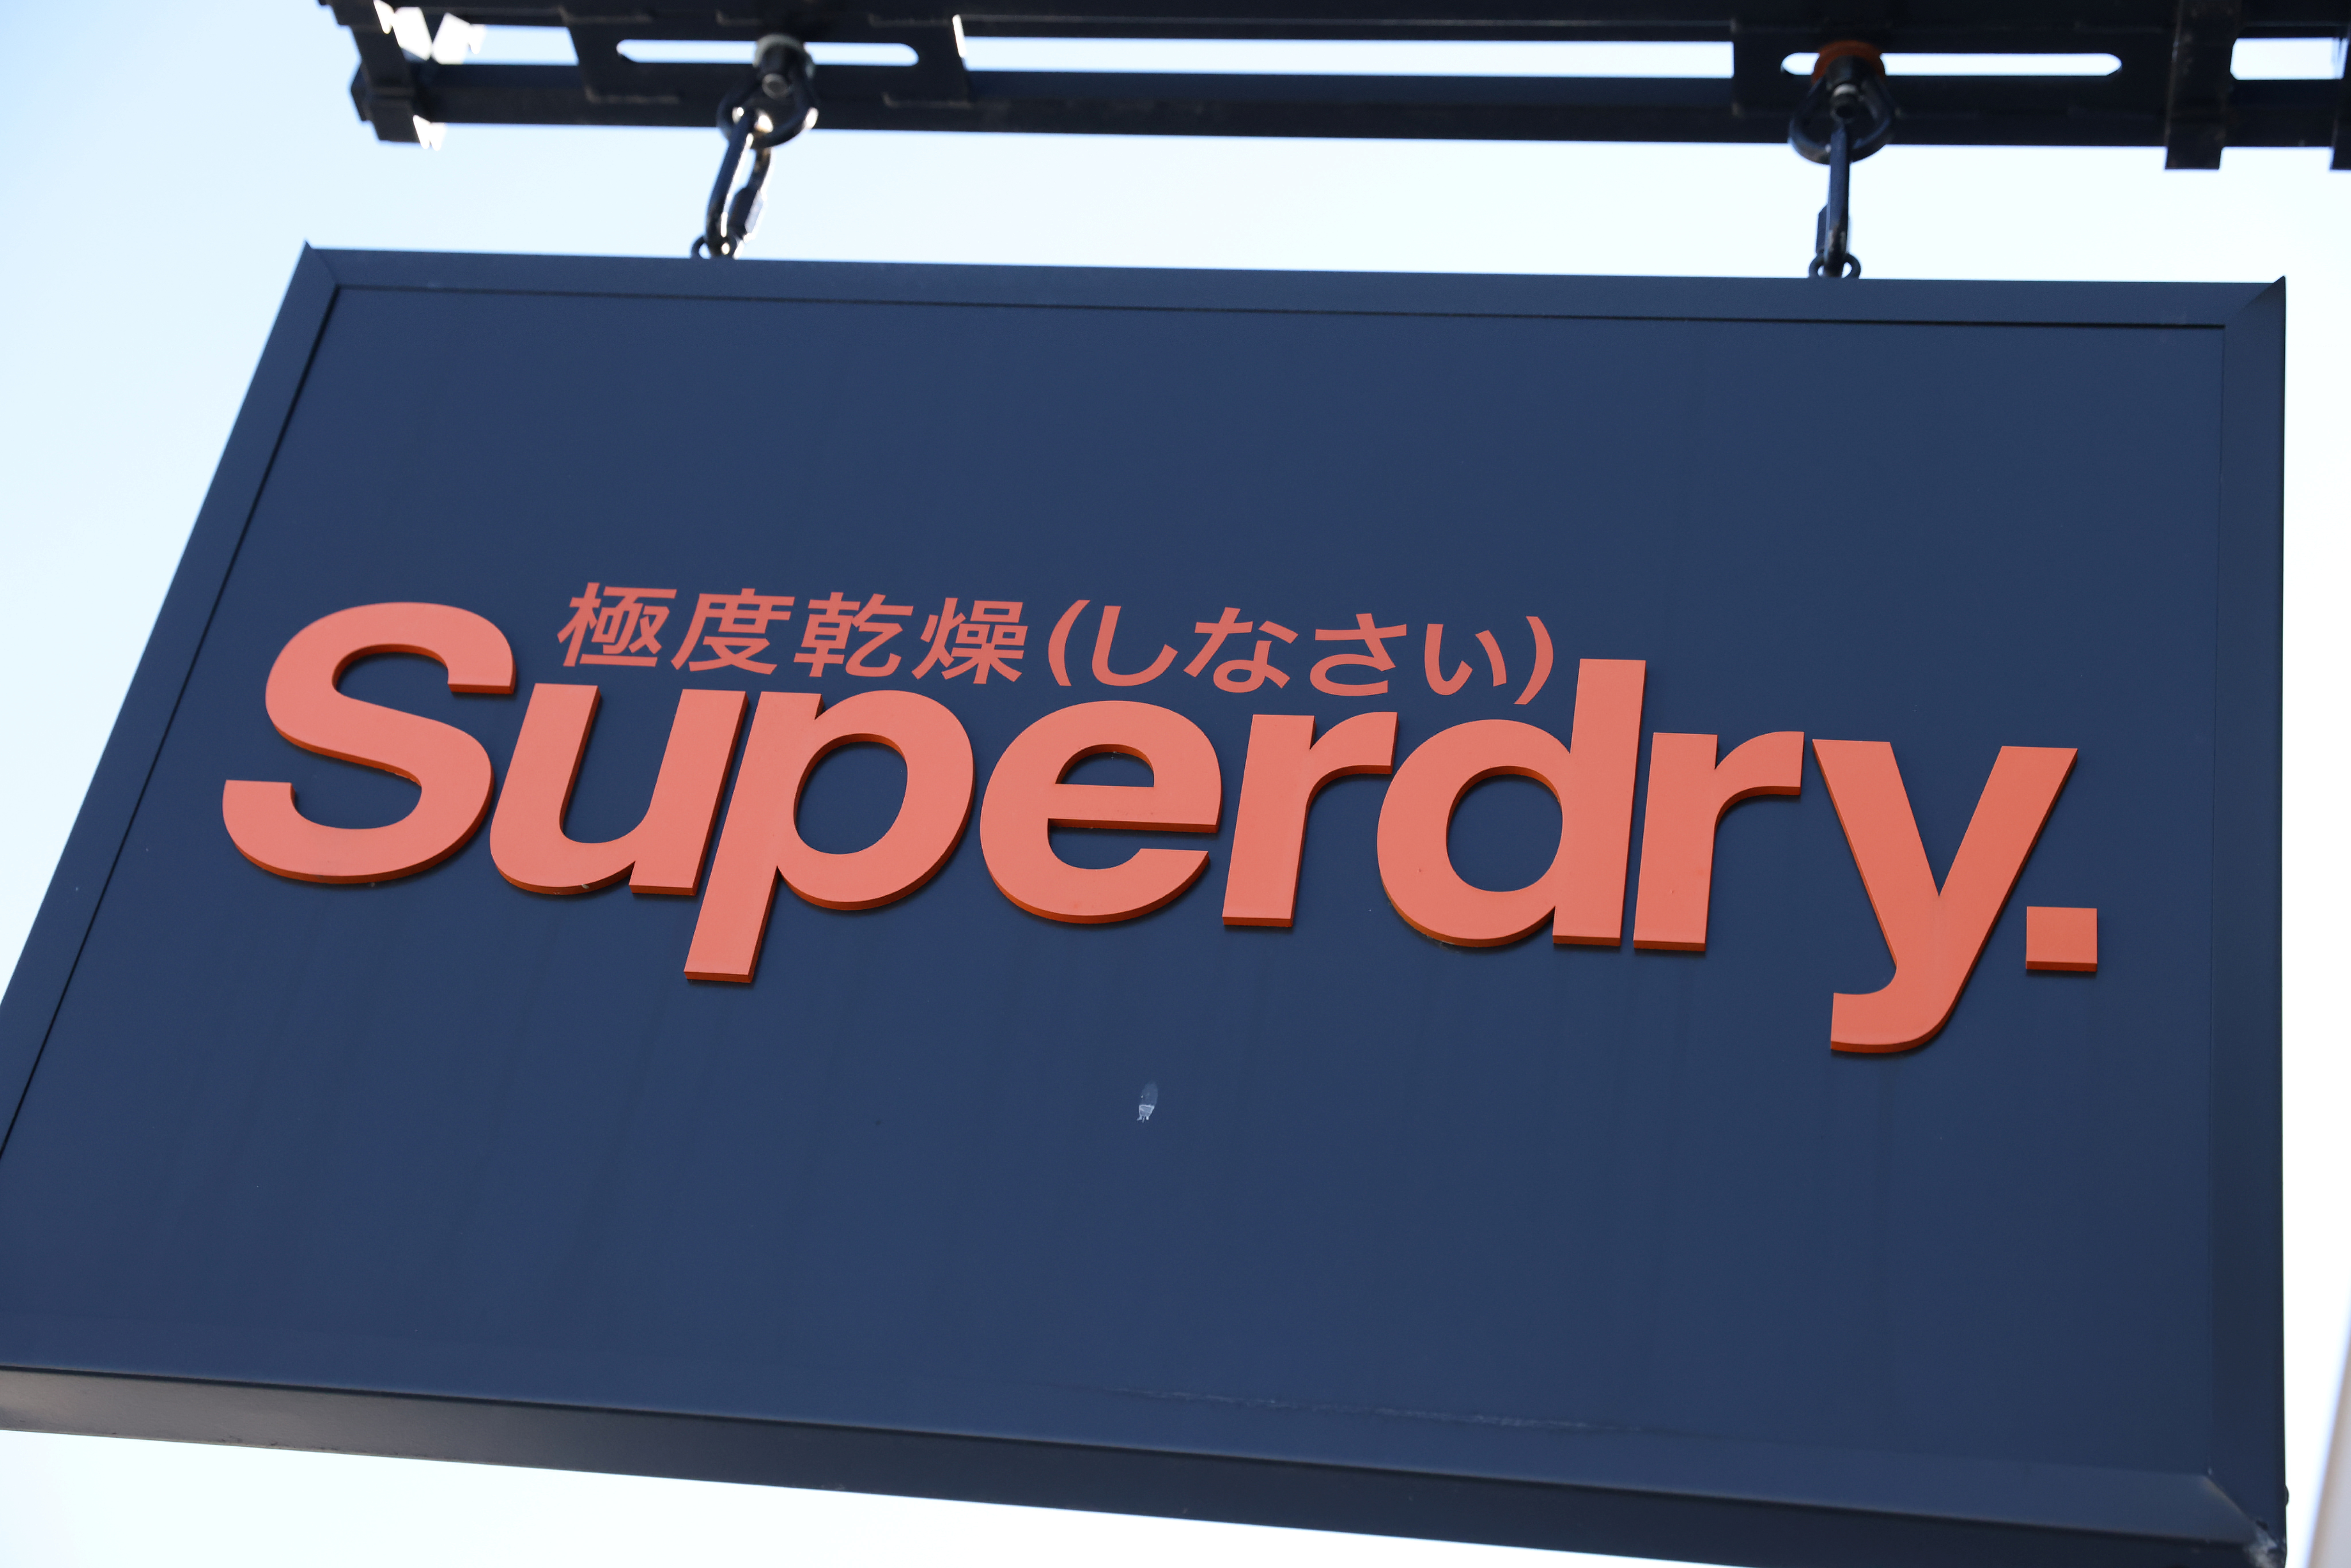 Neerwaarts Clip vlinder Afwezigheid Britain's Superdry sells Asia Pacific IP for $50 mln | Reuters